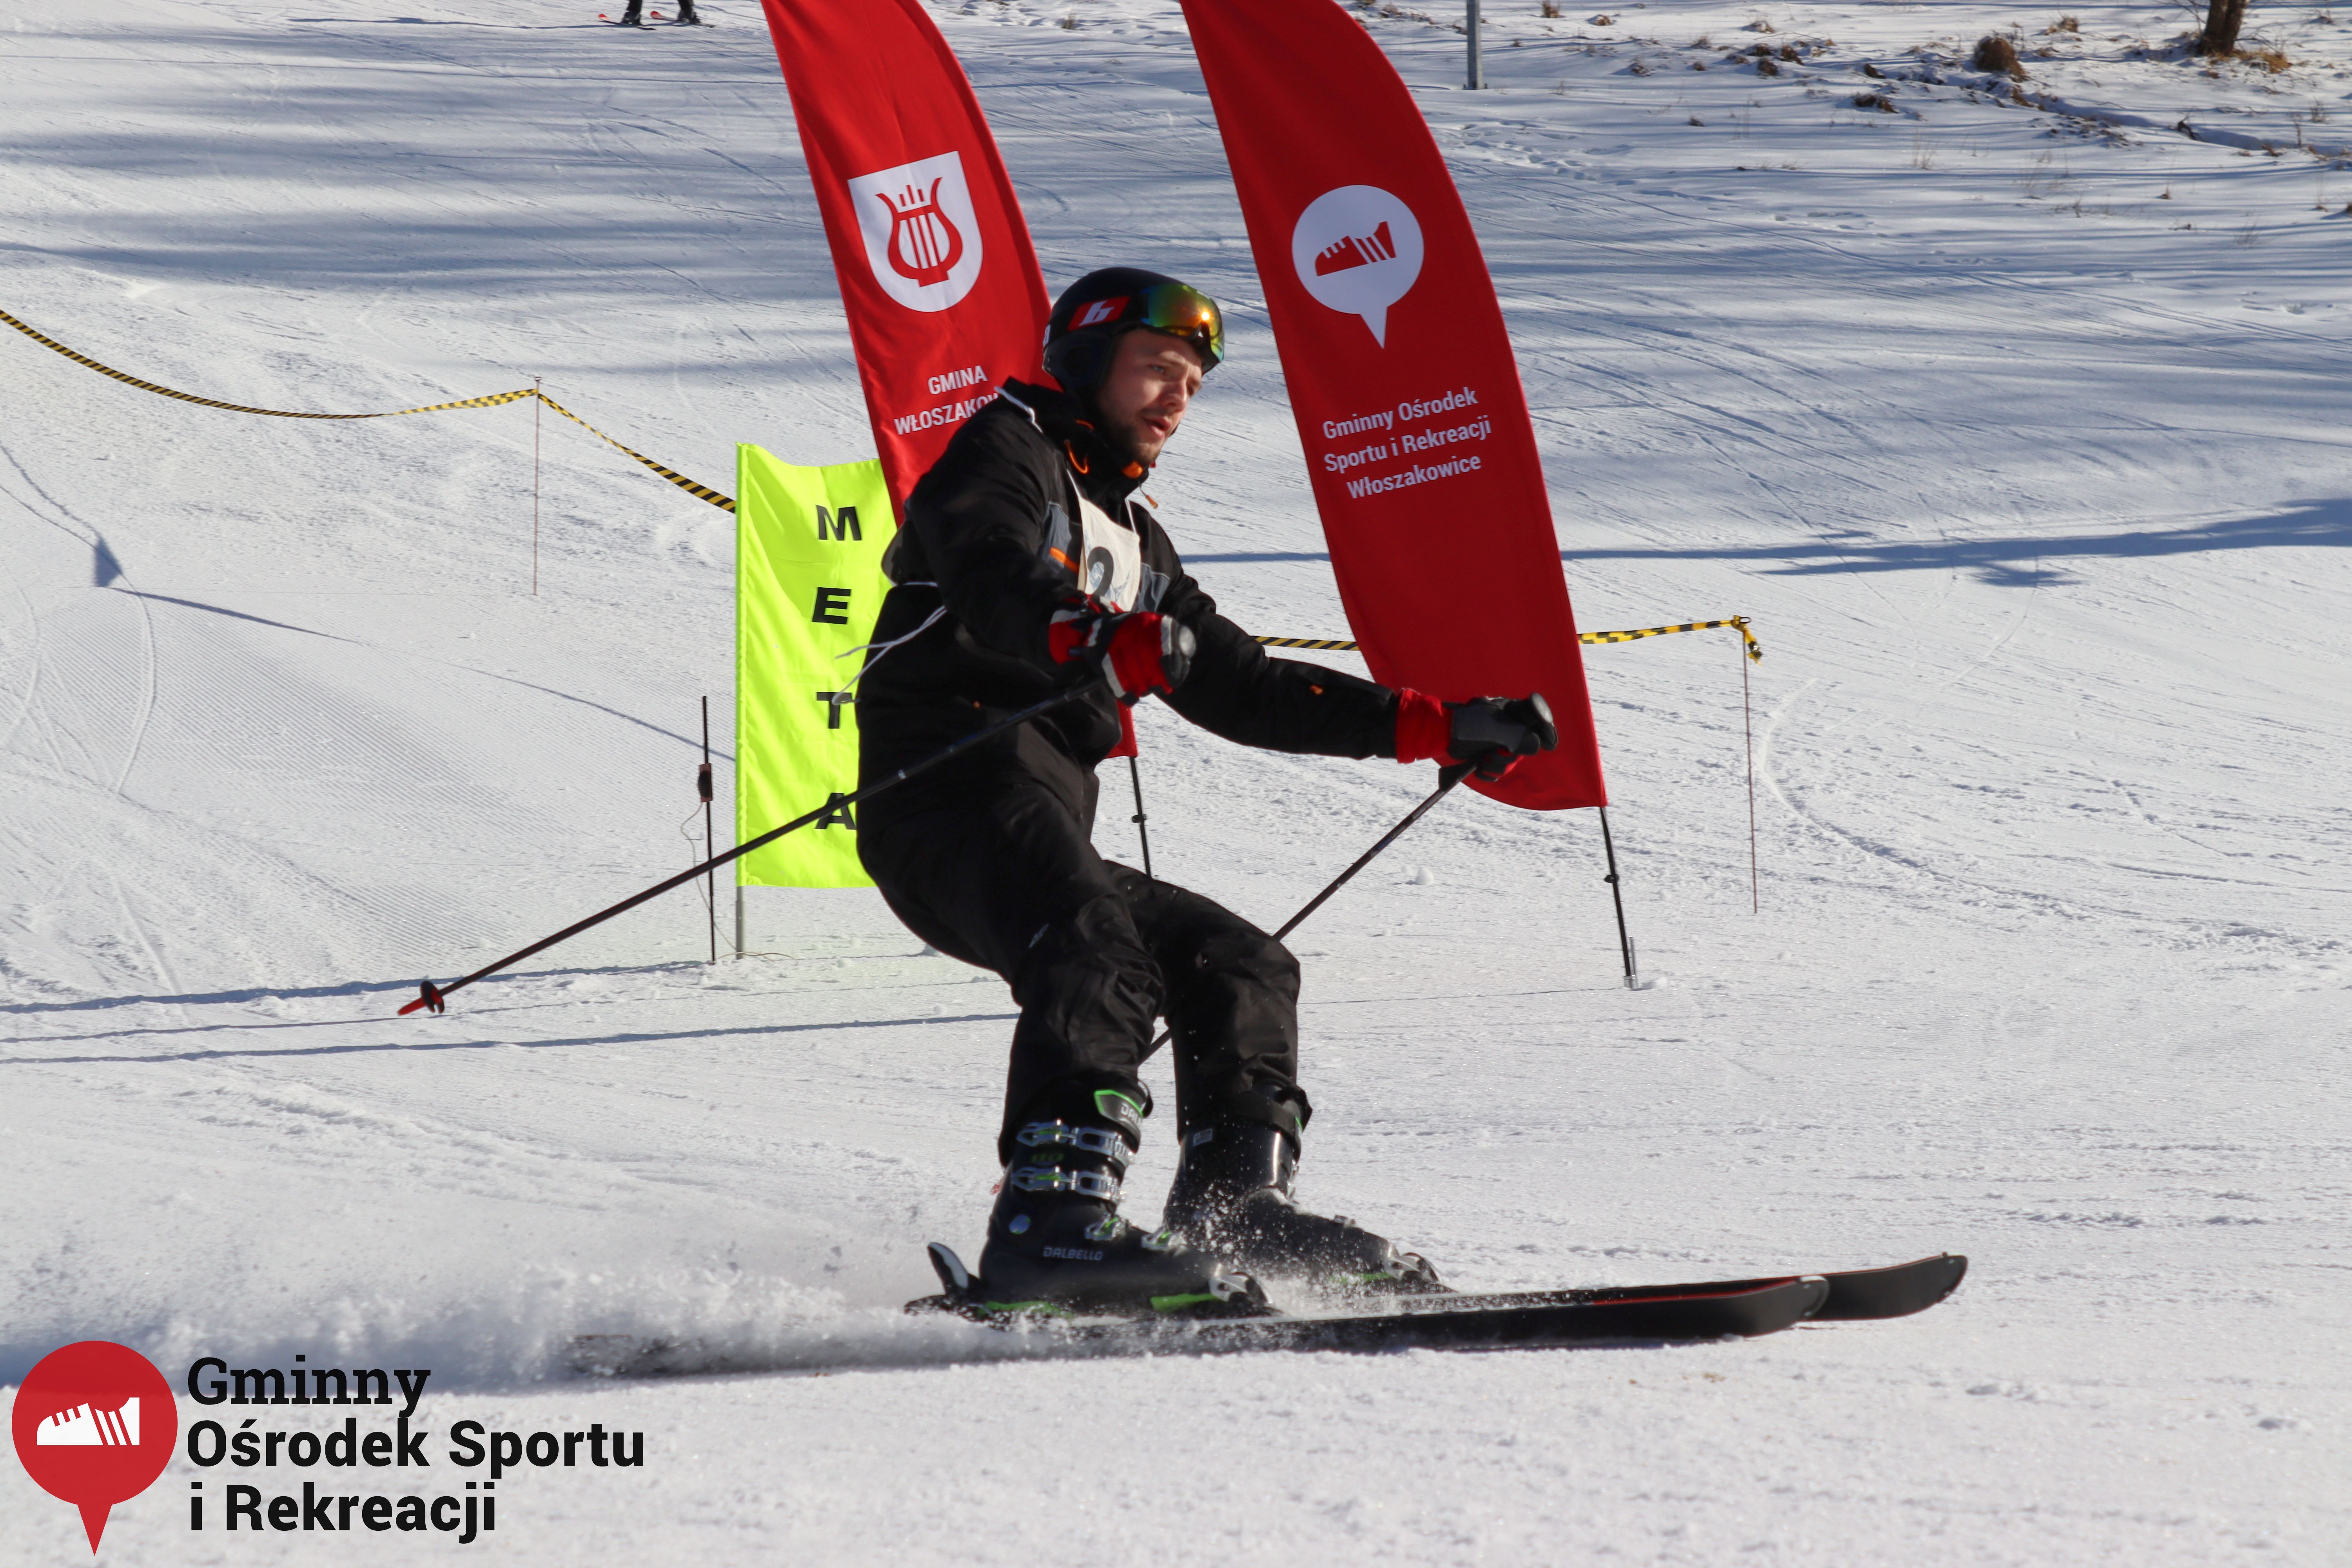 2022.02.12 - 18. Mistrzostwa Gminy Woszakowice w narciarstwie102.jpg - 2,31 MB